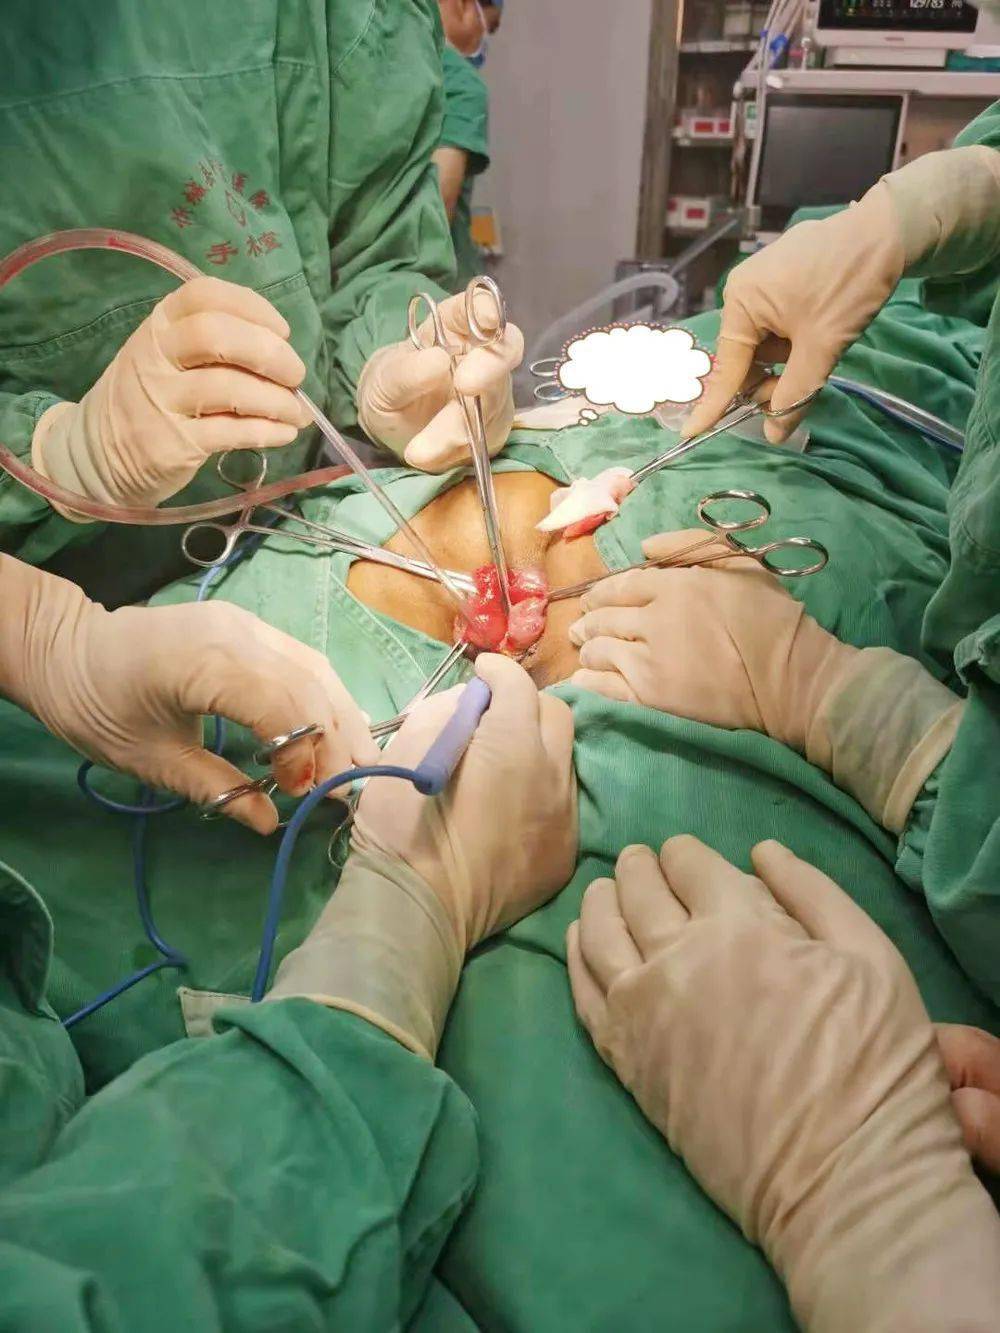 孙平良教授使用xnz肛肠微创四步疗法技术为患者进行微创手术xnz肛肠